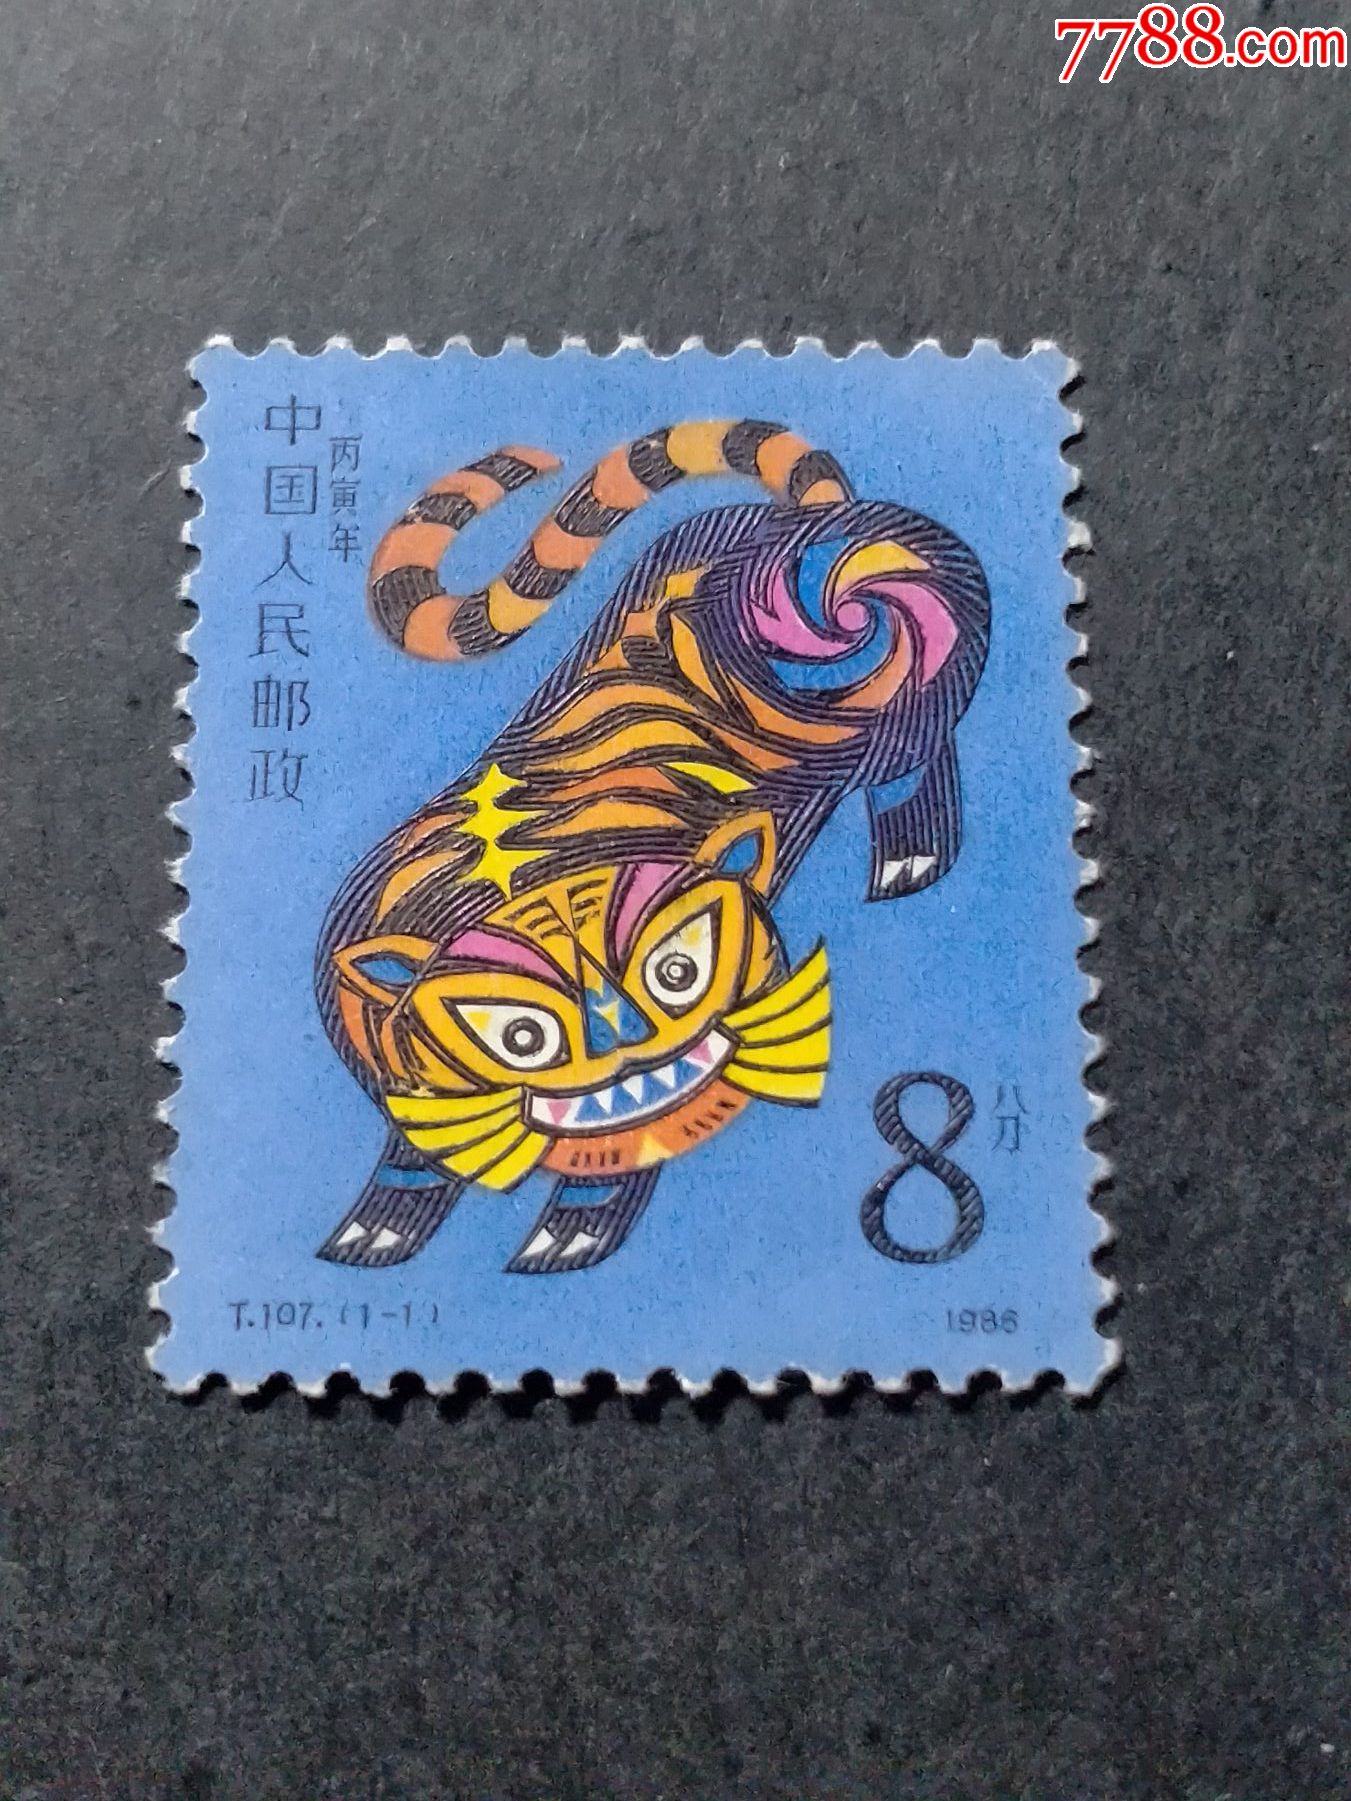 老虎邮票设计理念图片